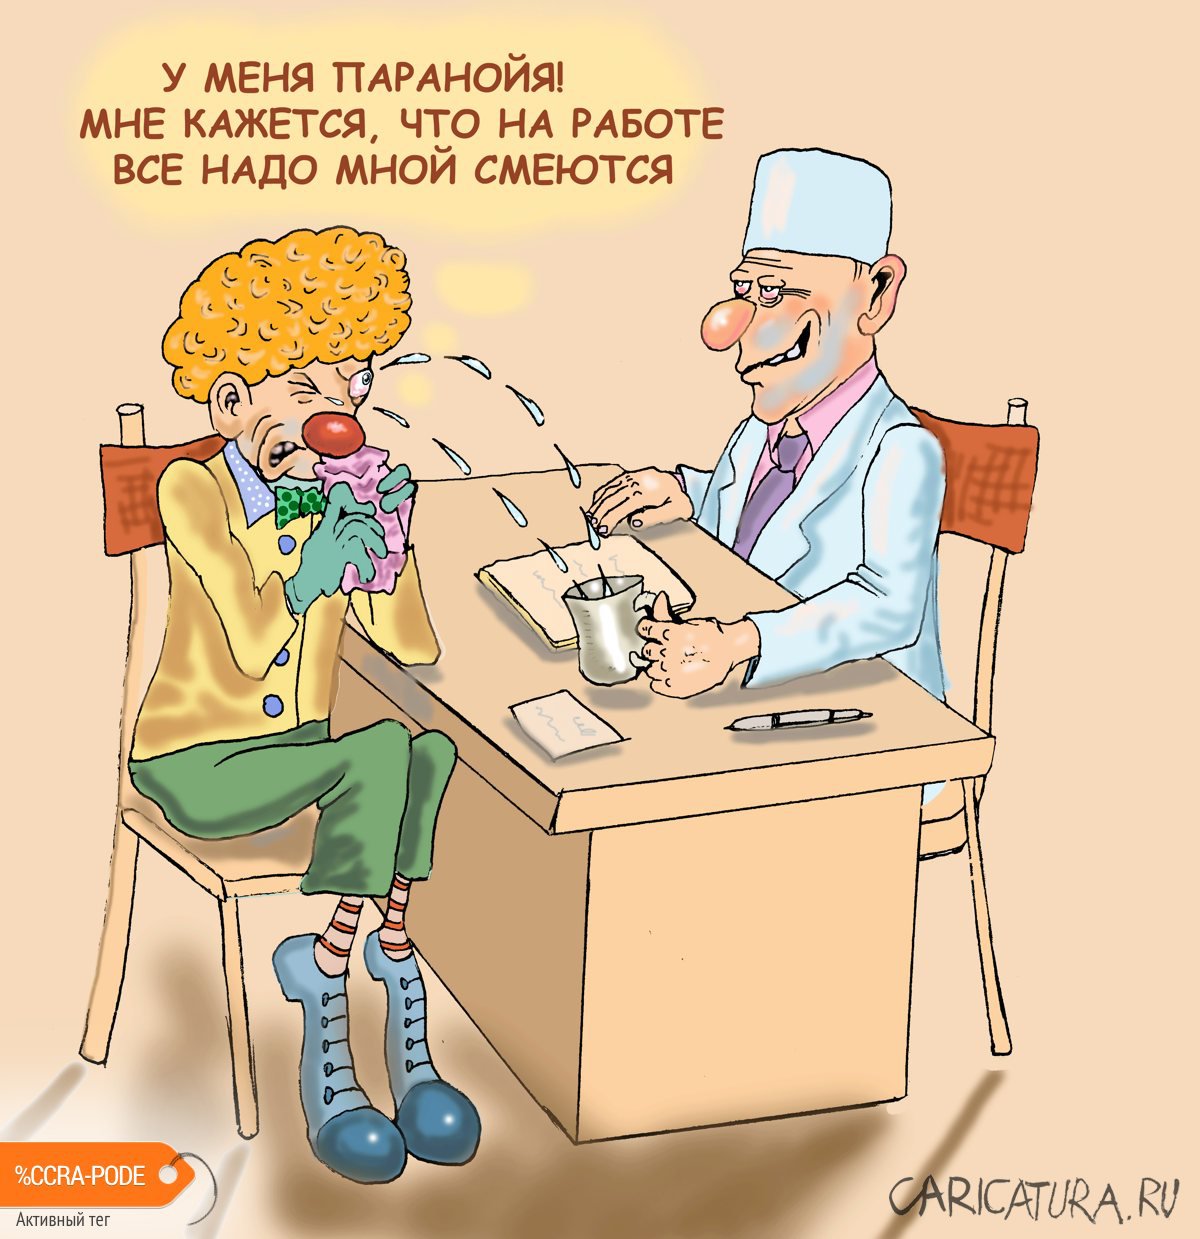 Карикатура "Паранойя у клоуна", Булат Ирсаев